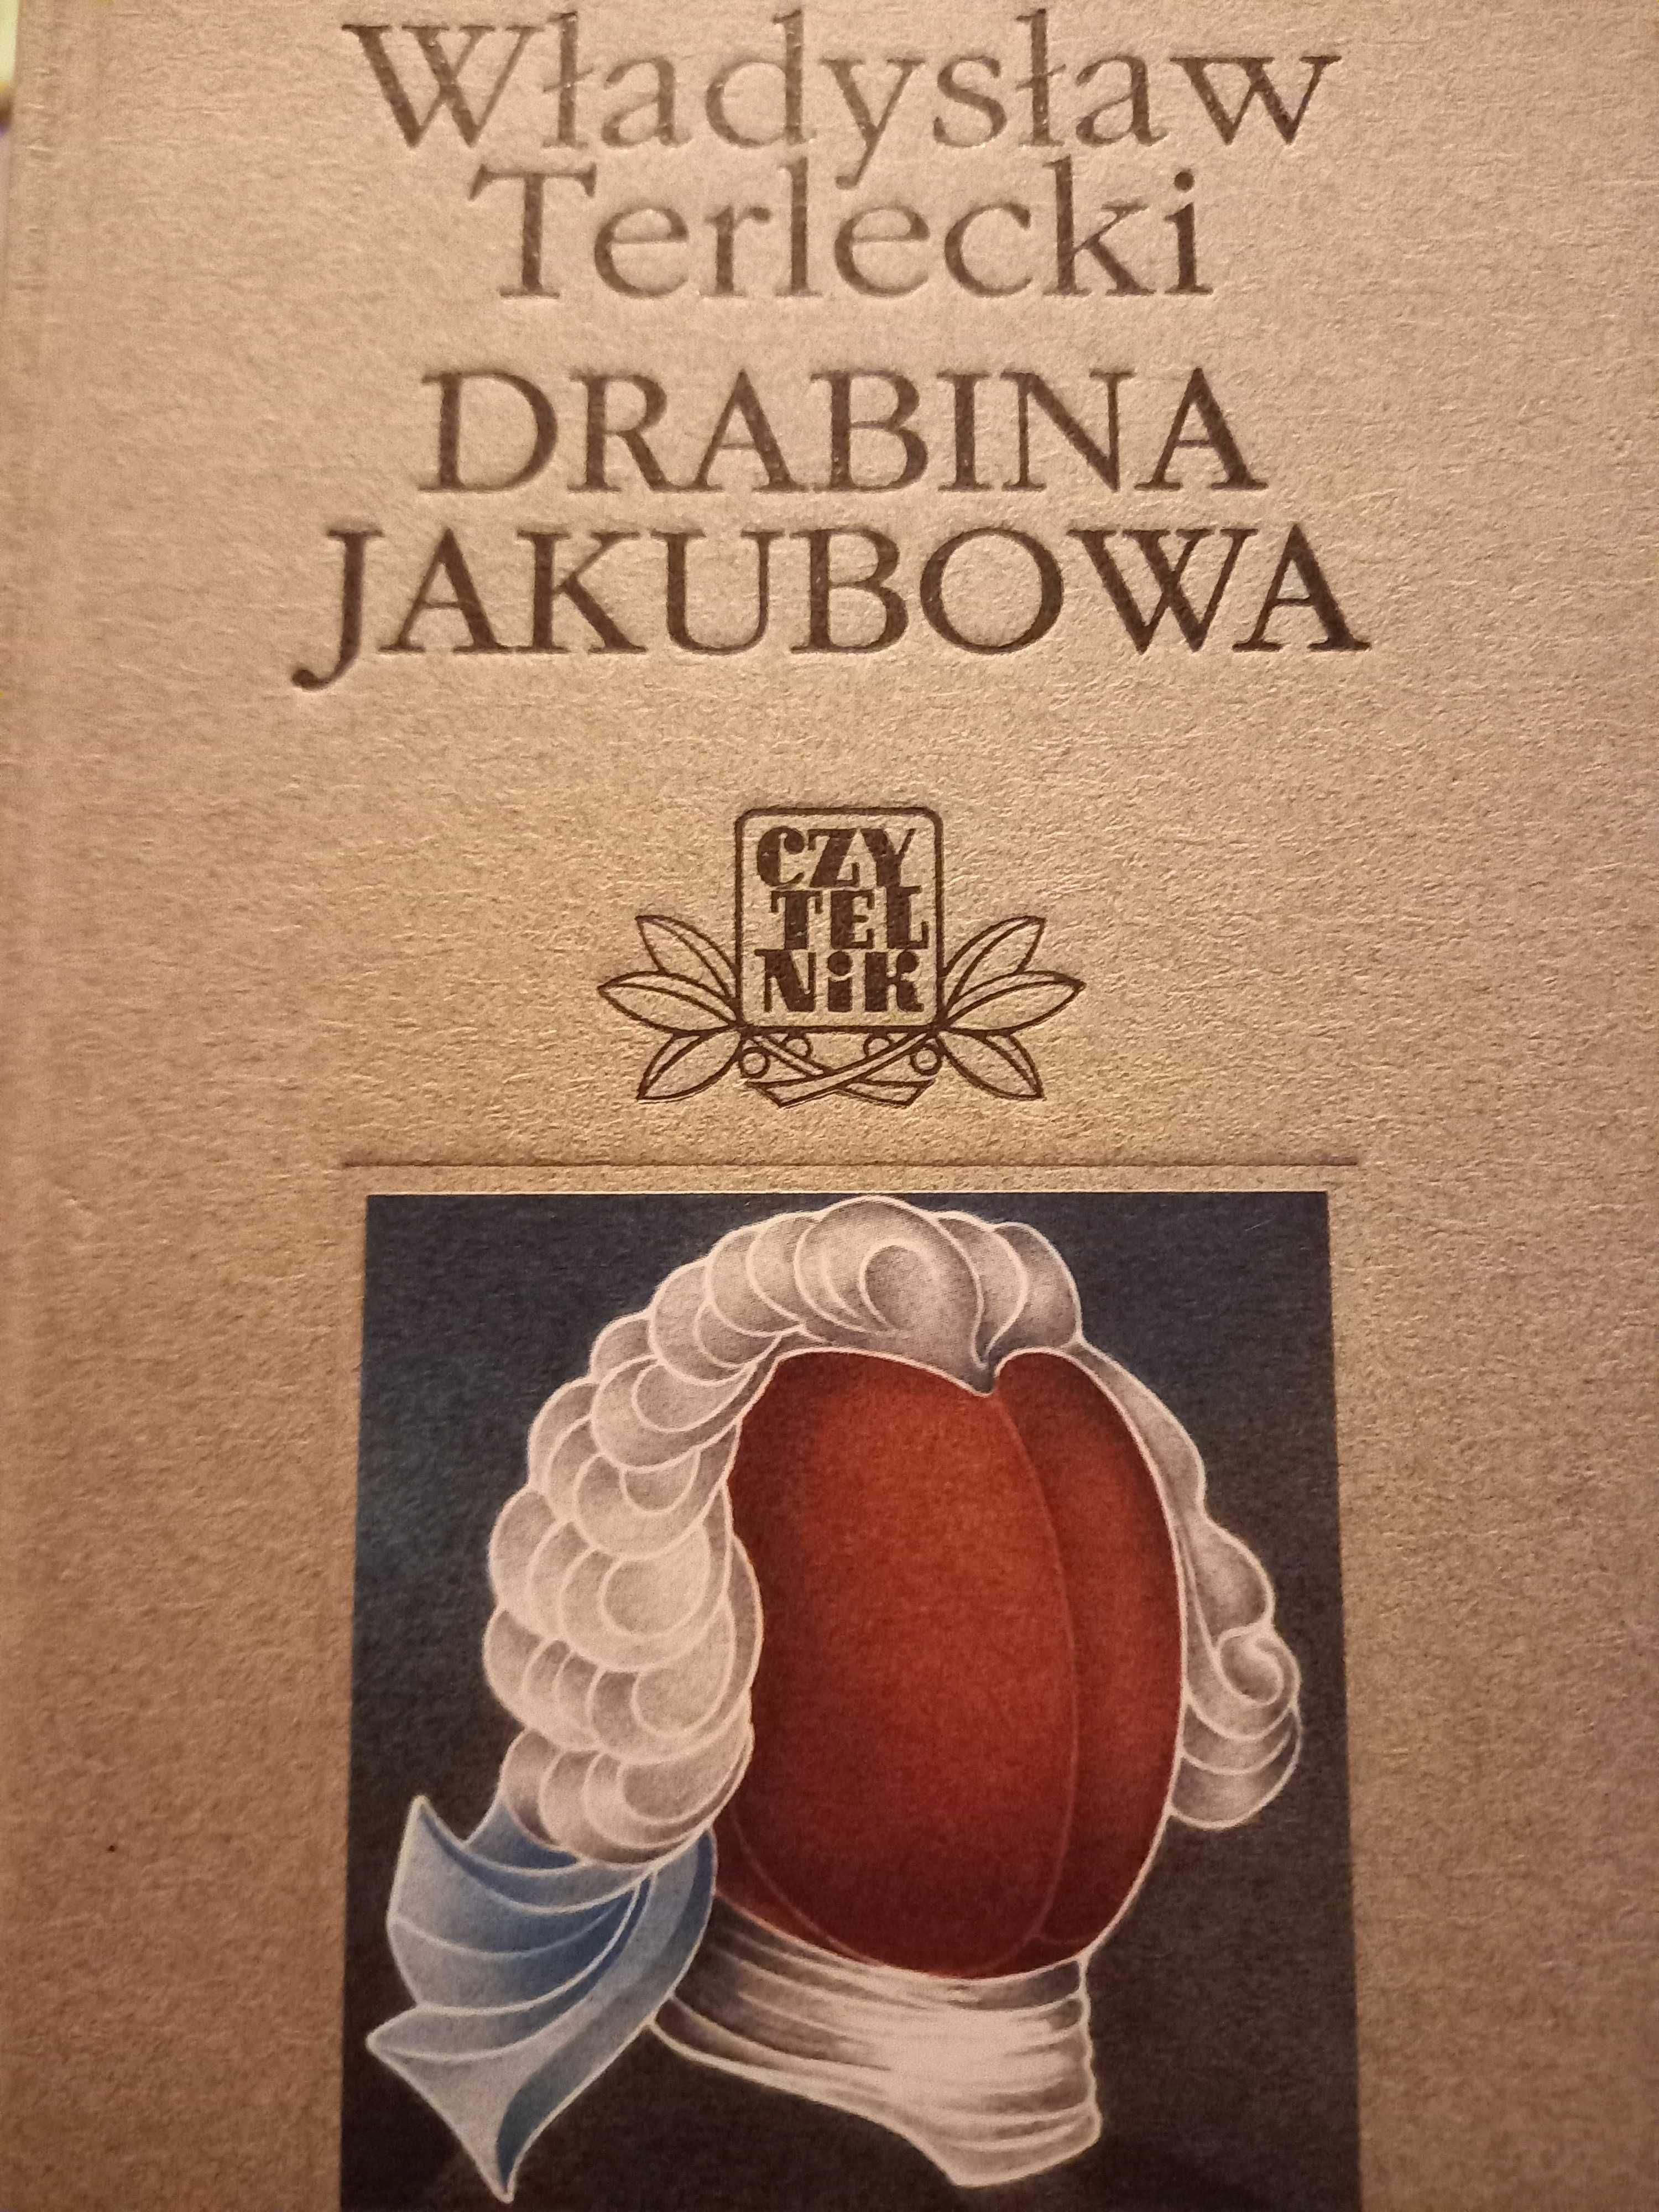 Drabina Jakubowa Władysław Terlecki